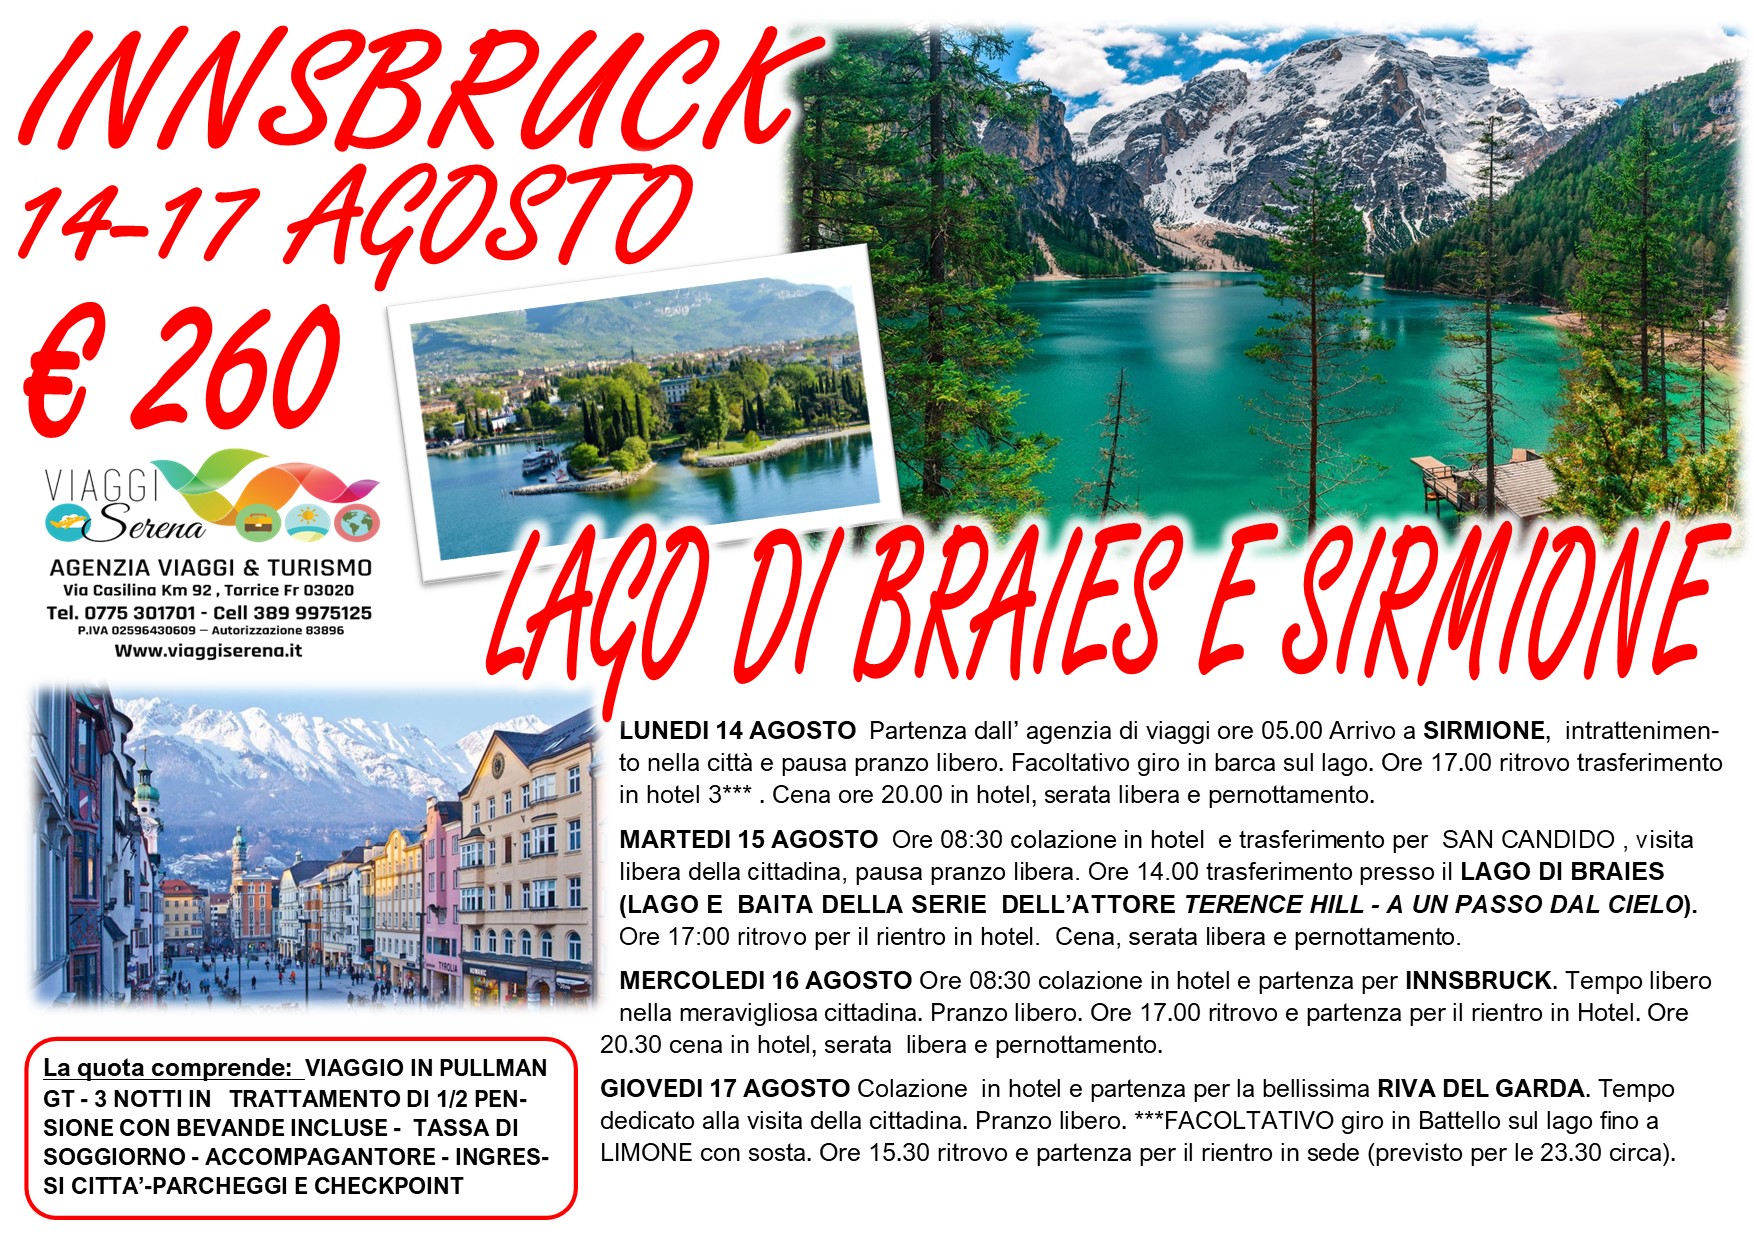 Viaggi di Gruppo: Innsbruck , Lago di Braies, Sirmione & Riva del Garda 14-15-16-17 Agosto € 260,00